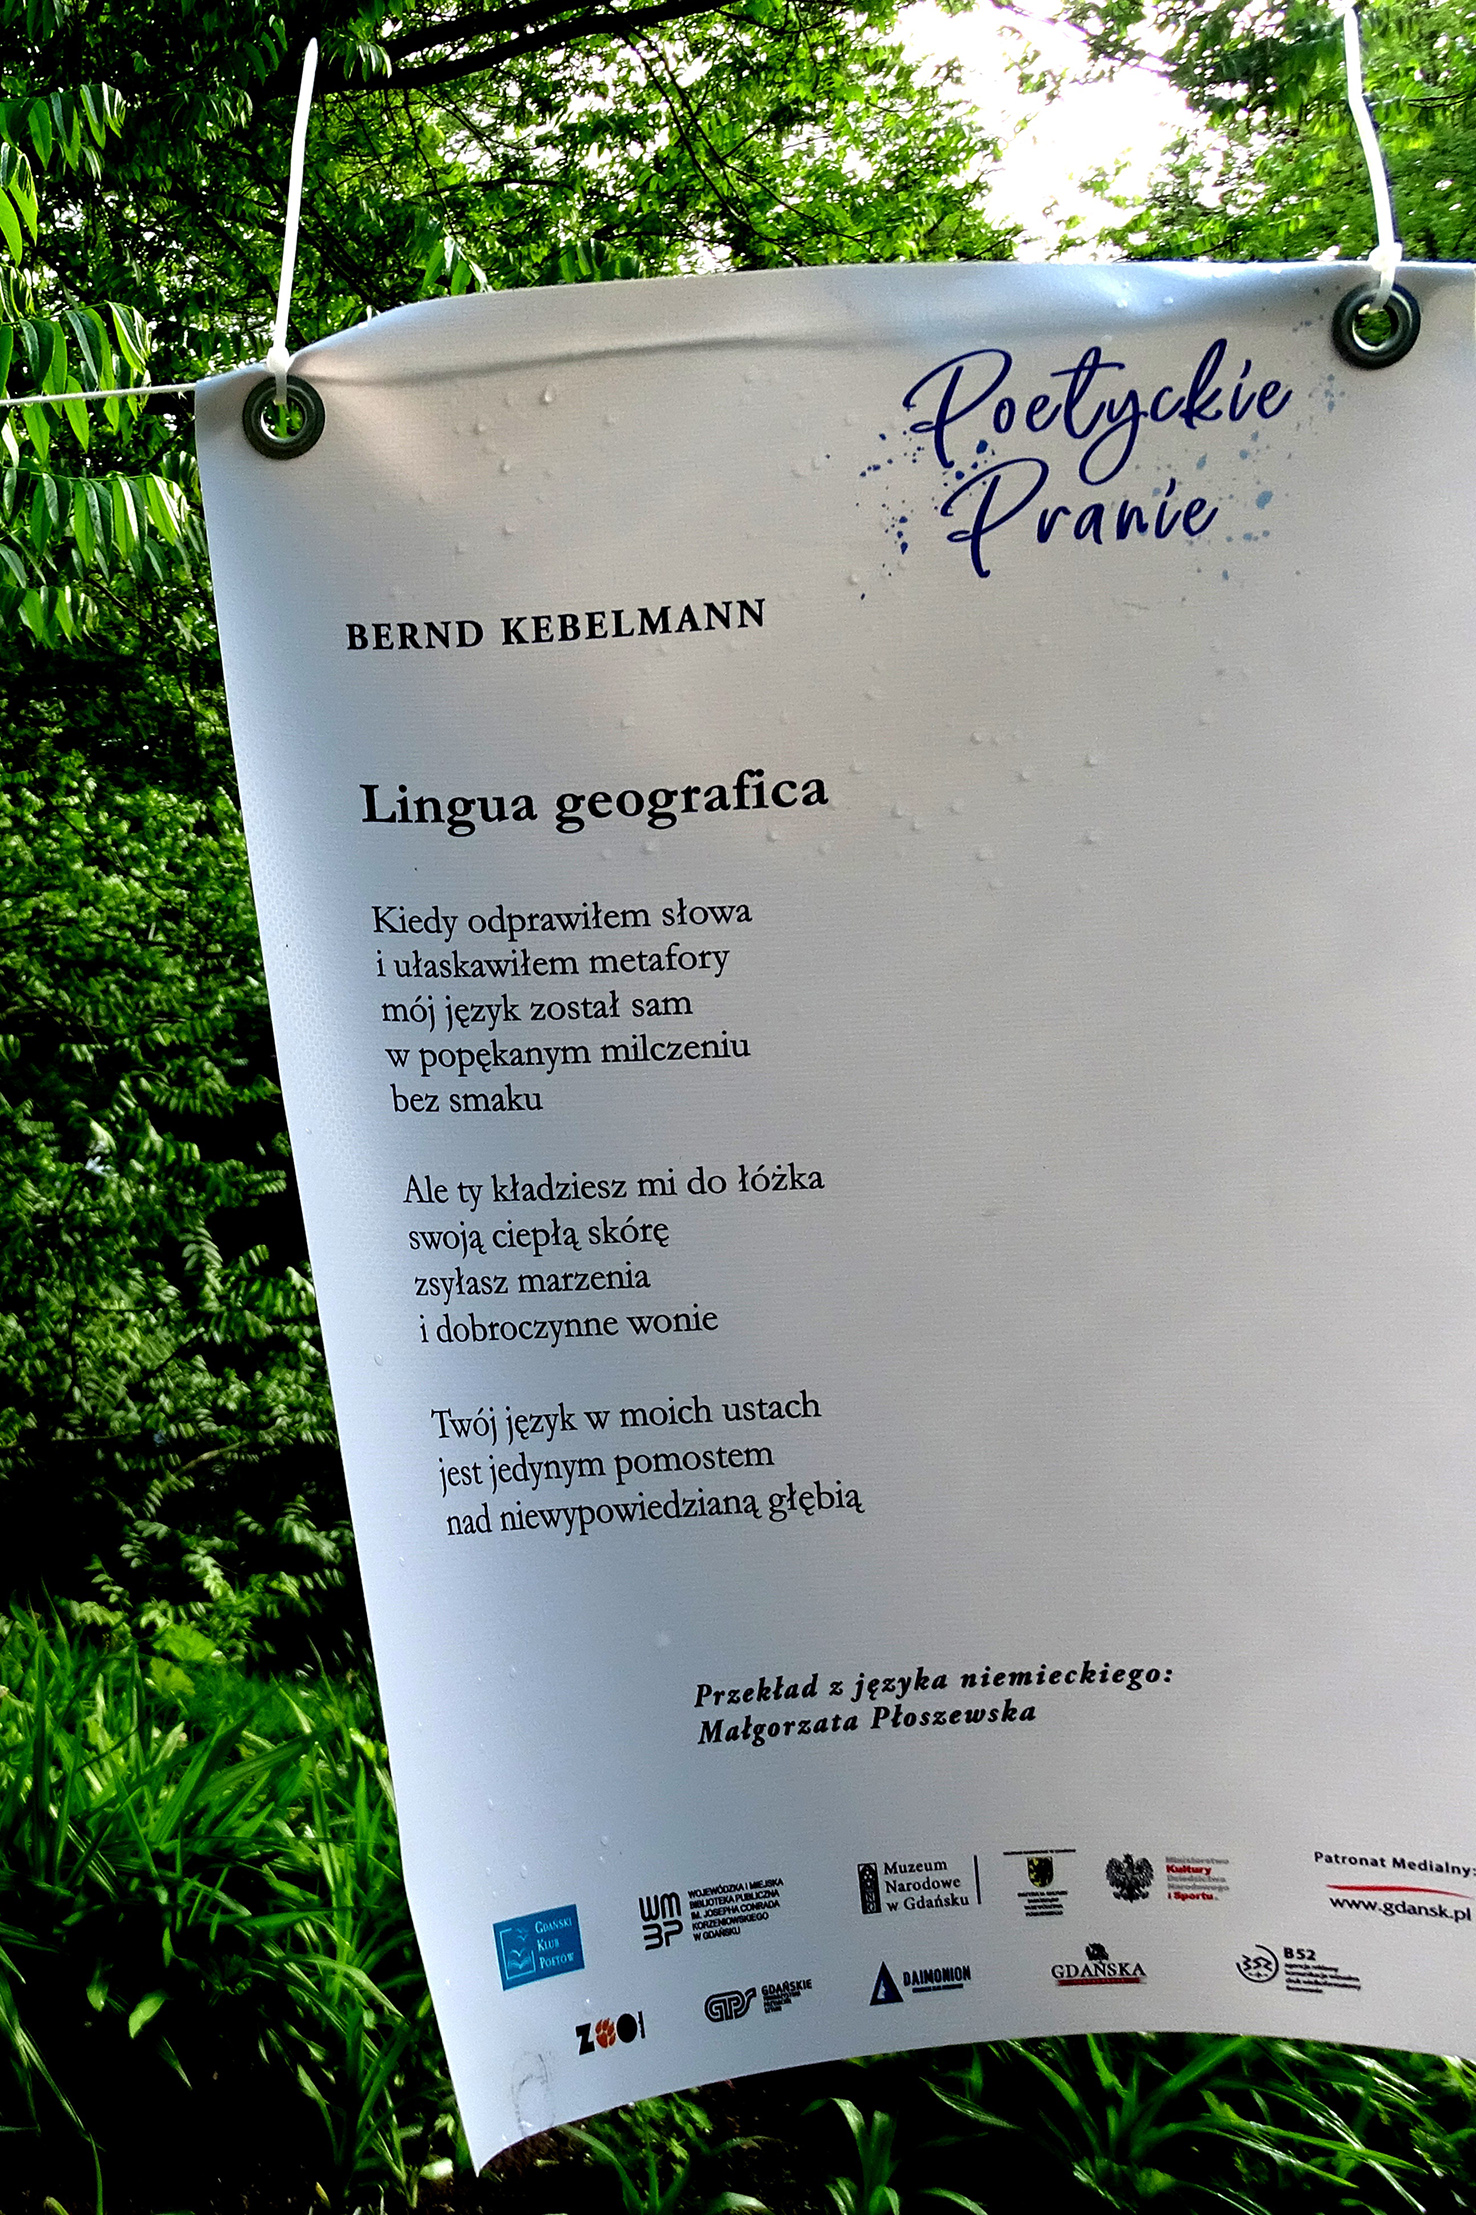 Tag der Poesie in Danzig,Jahreszahl, Kebelmanns Gedicht